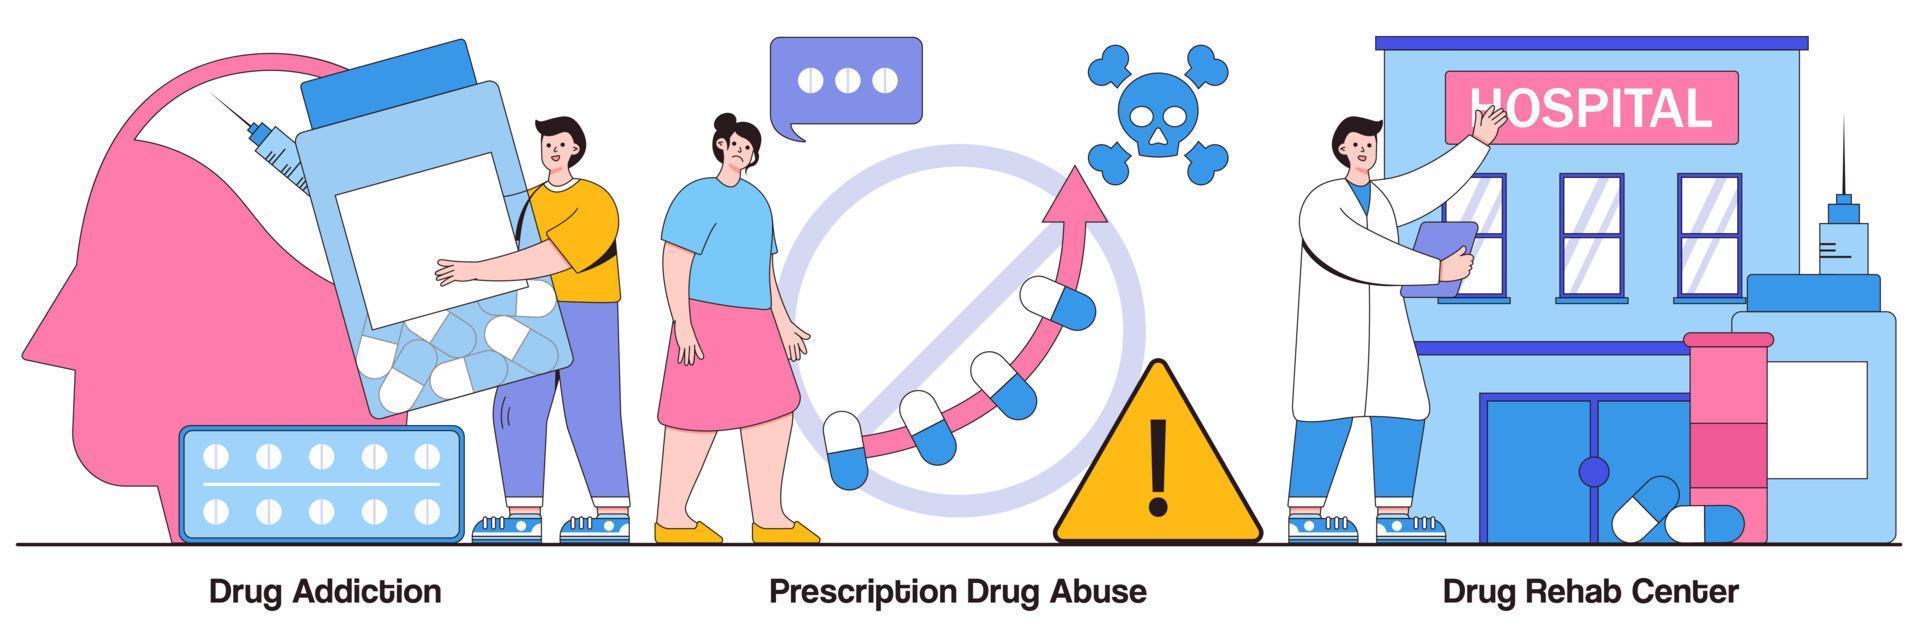 centro de reabilitação e dependência de drogas, pacote ilustrado de abuso de medicamentos prescritos vetor